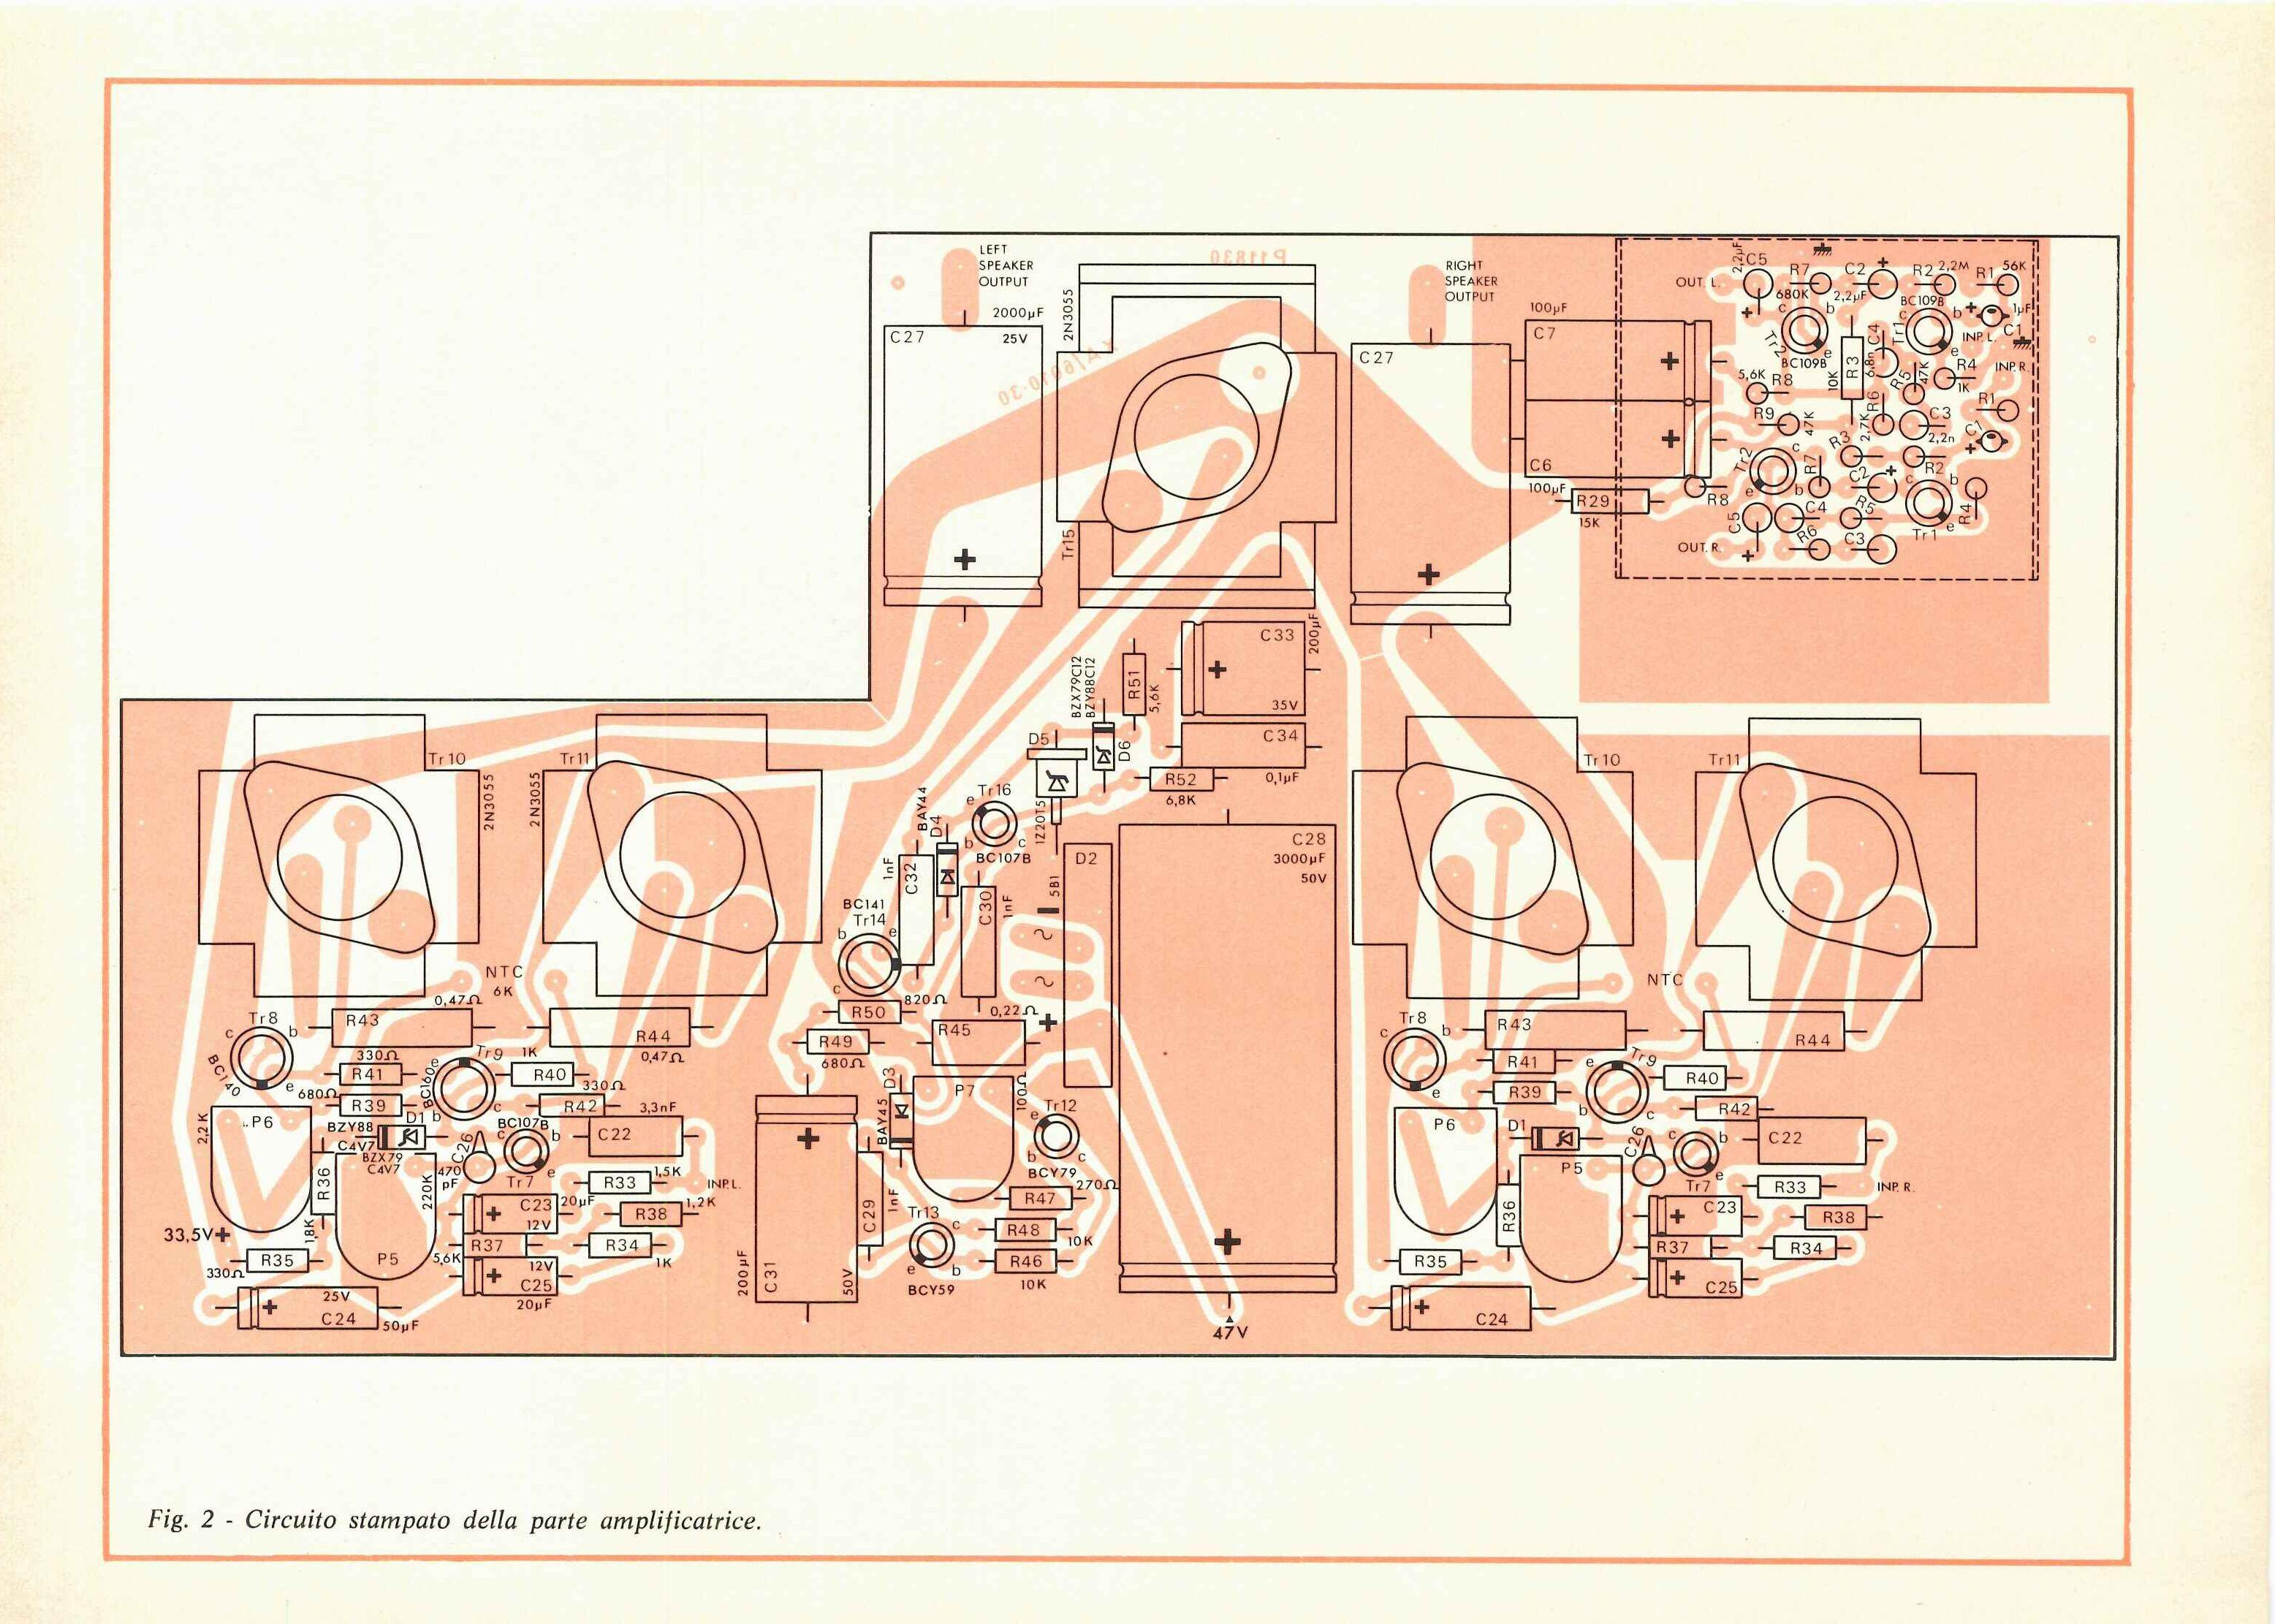 Fig. 2 - Circuito stampato